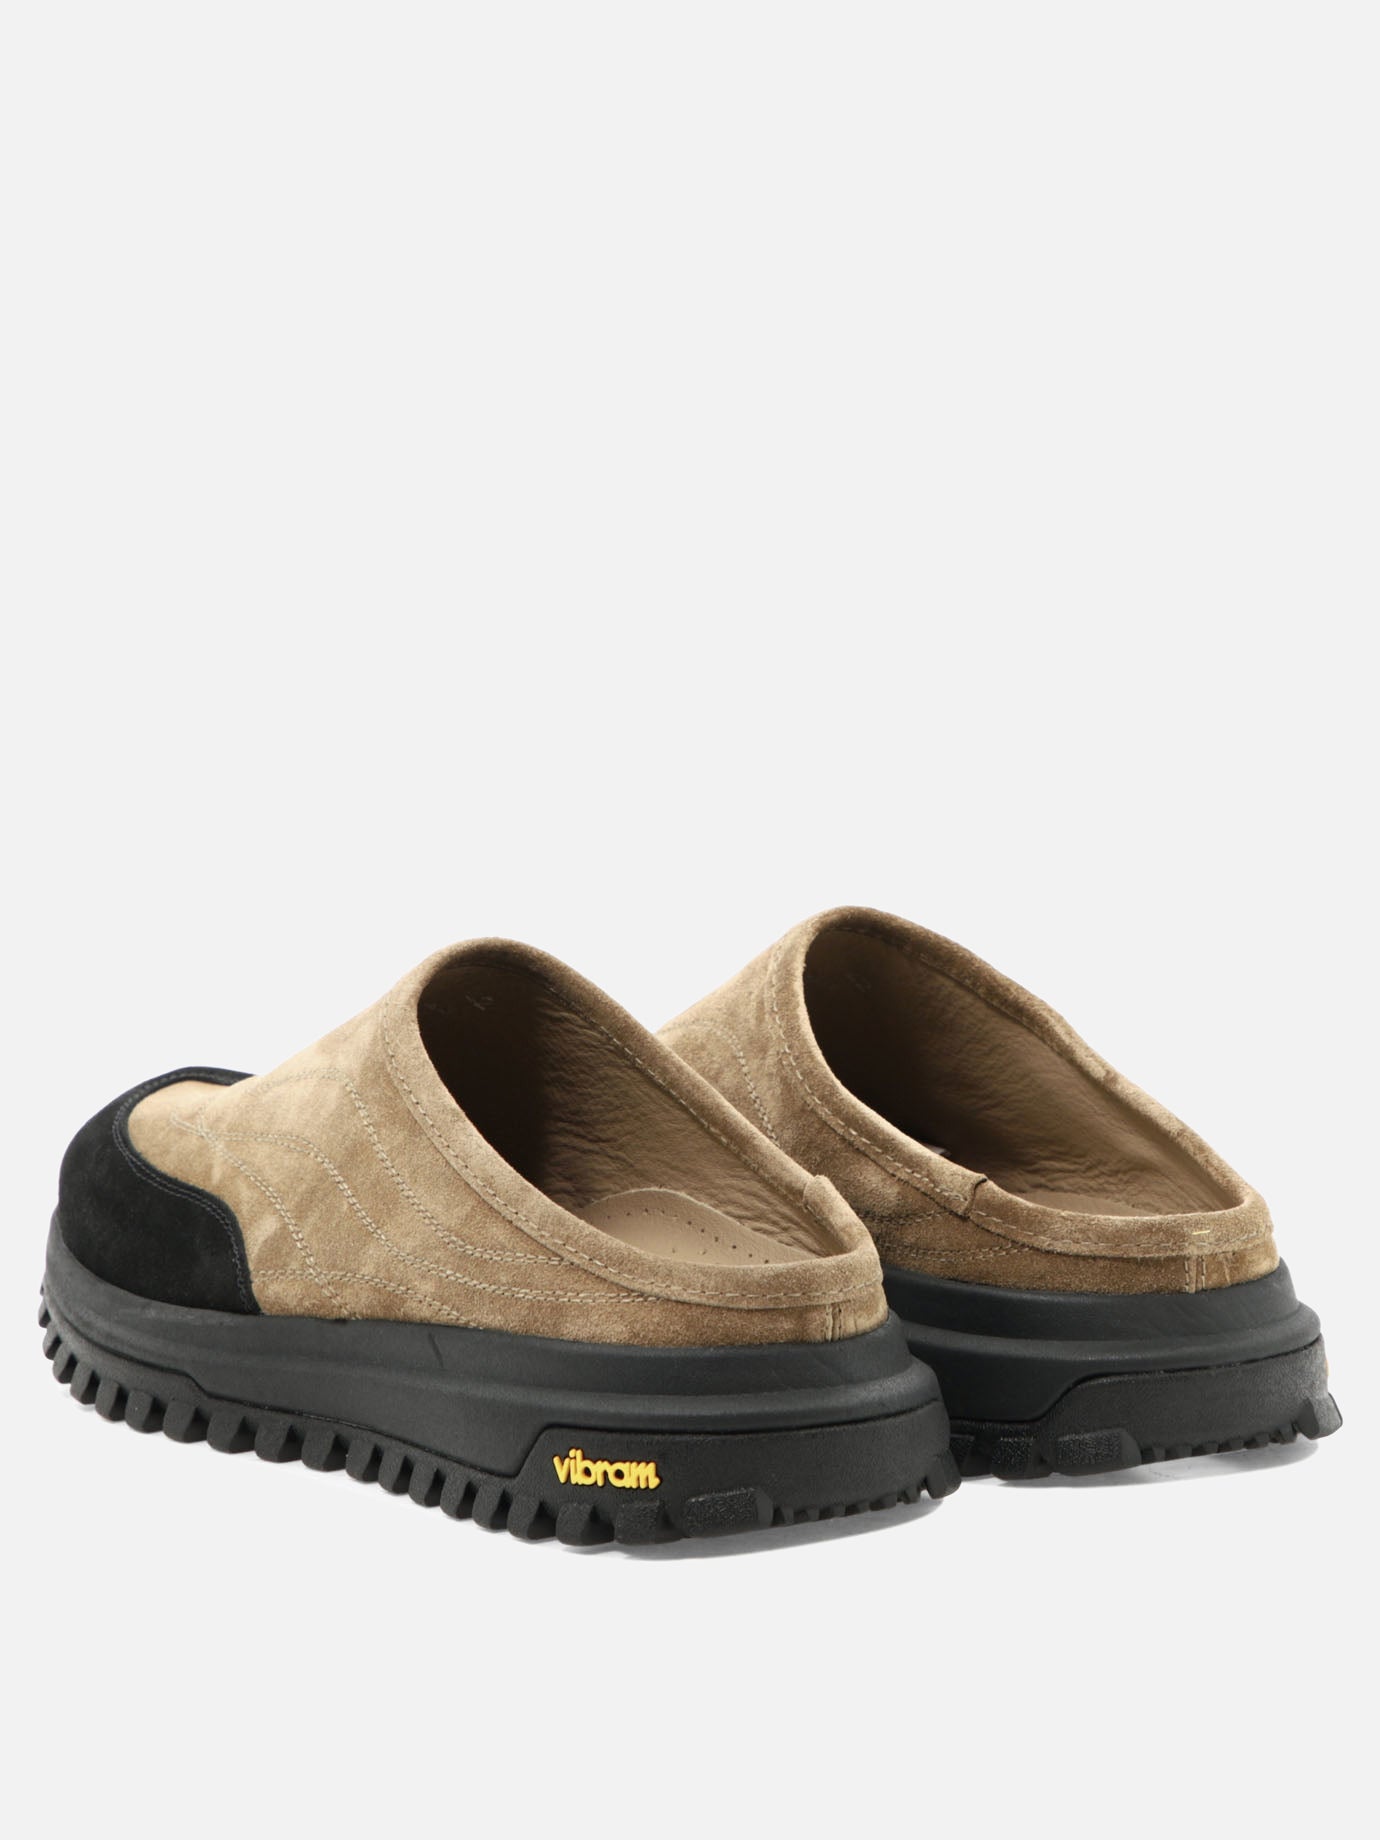 "Maggiore" slippers